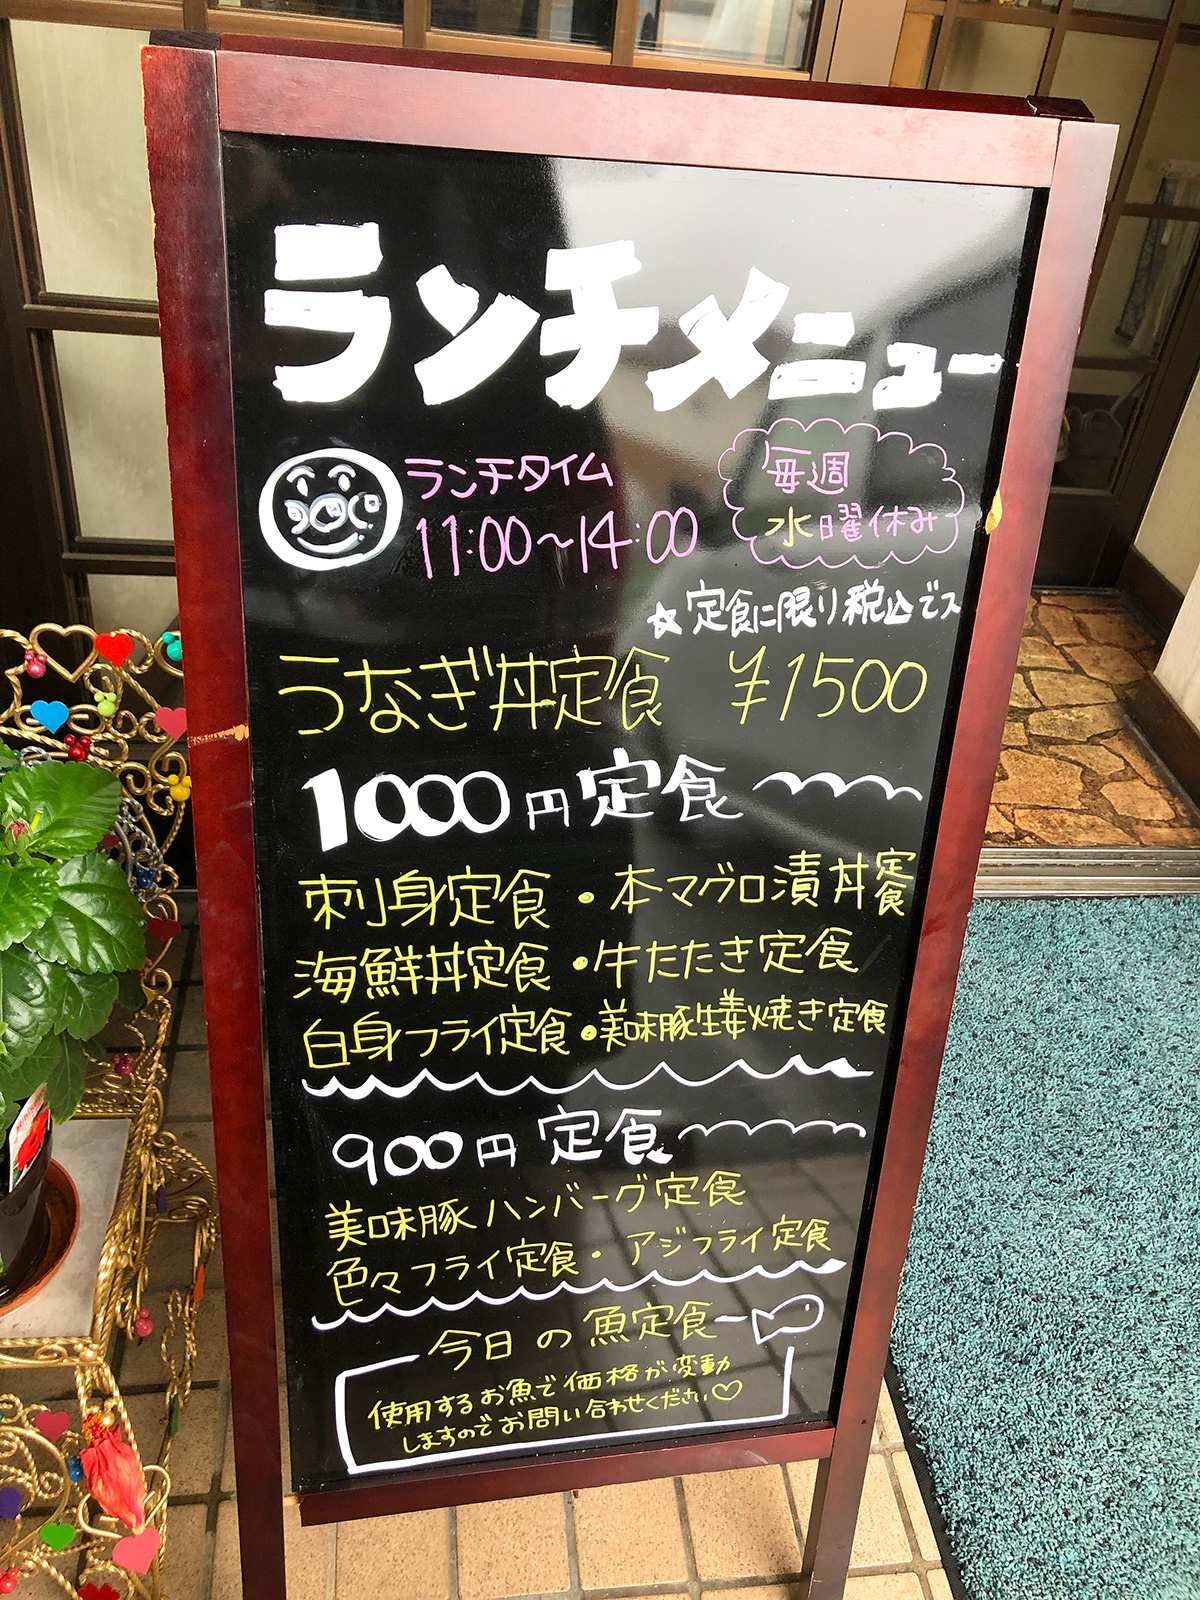 居酒屋 ほしの の色々フライ定食 名古屋市北区如意 ひとりめし食います 名古屋のお値打ちなランチを紹介するブログ